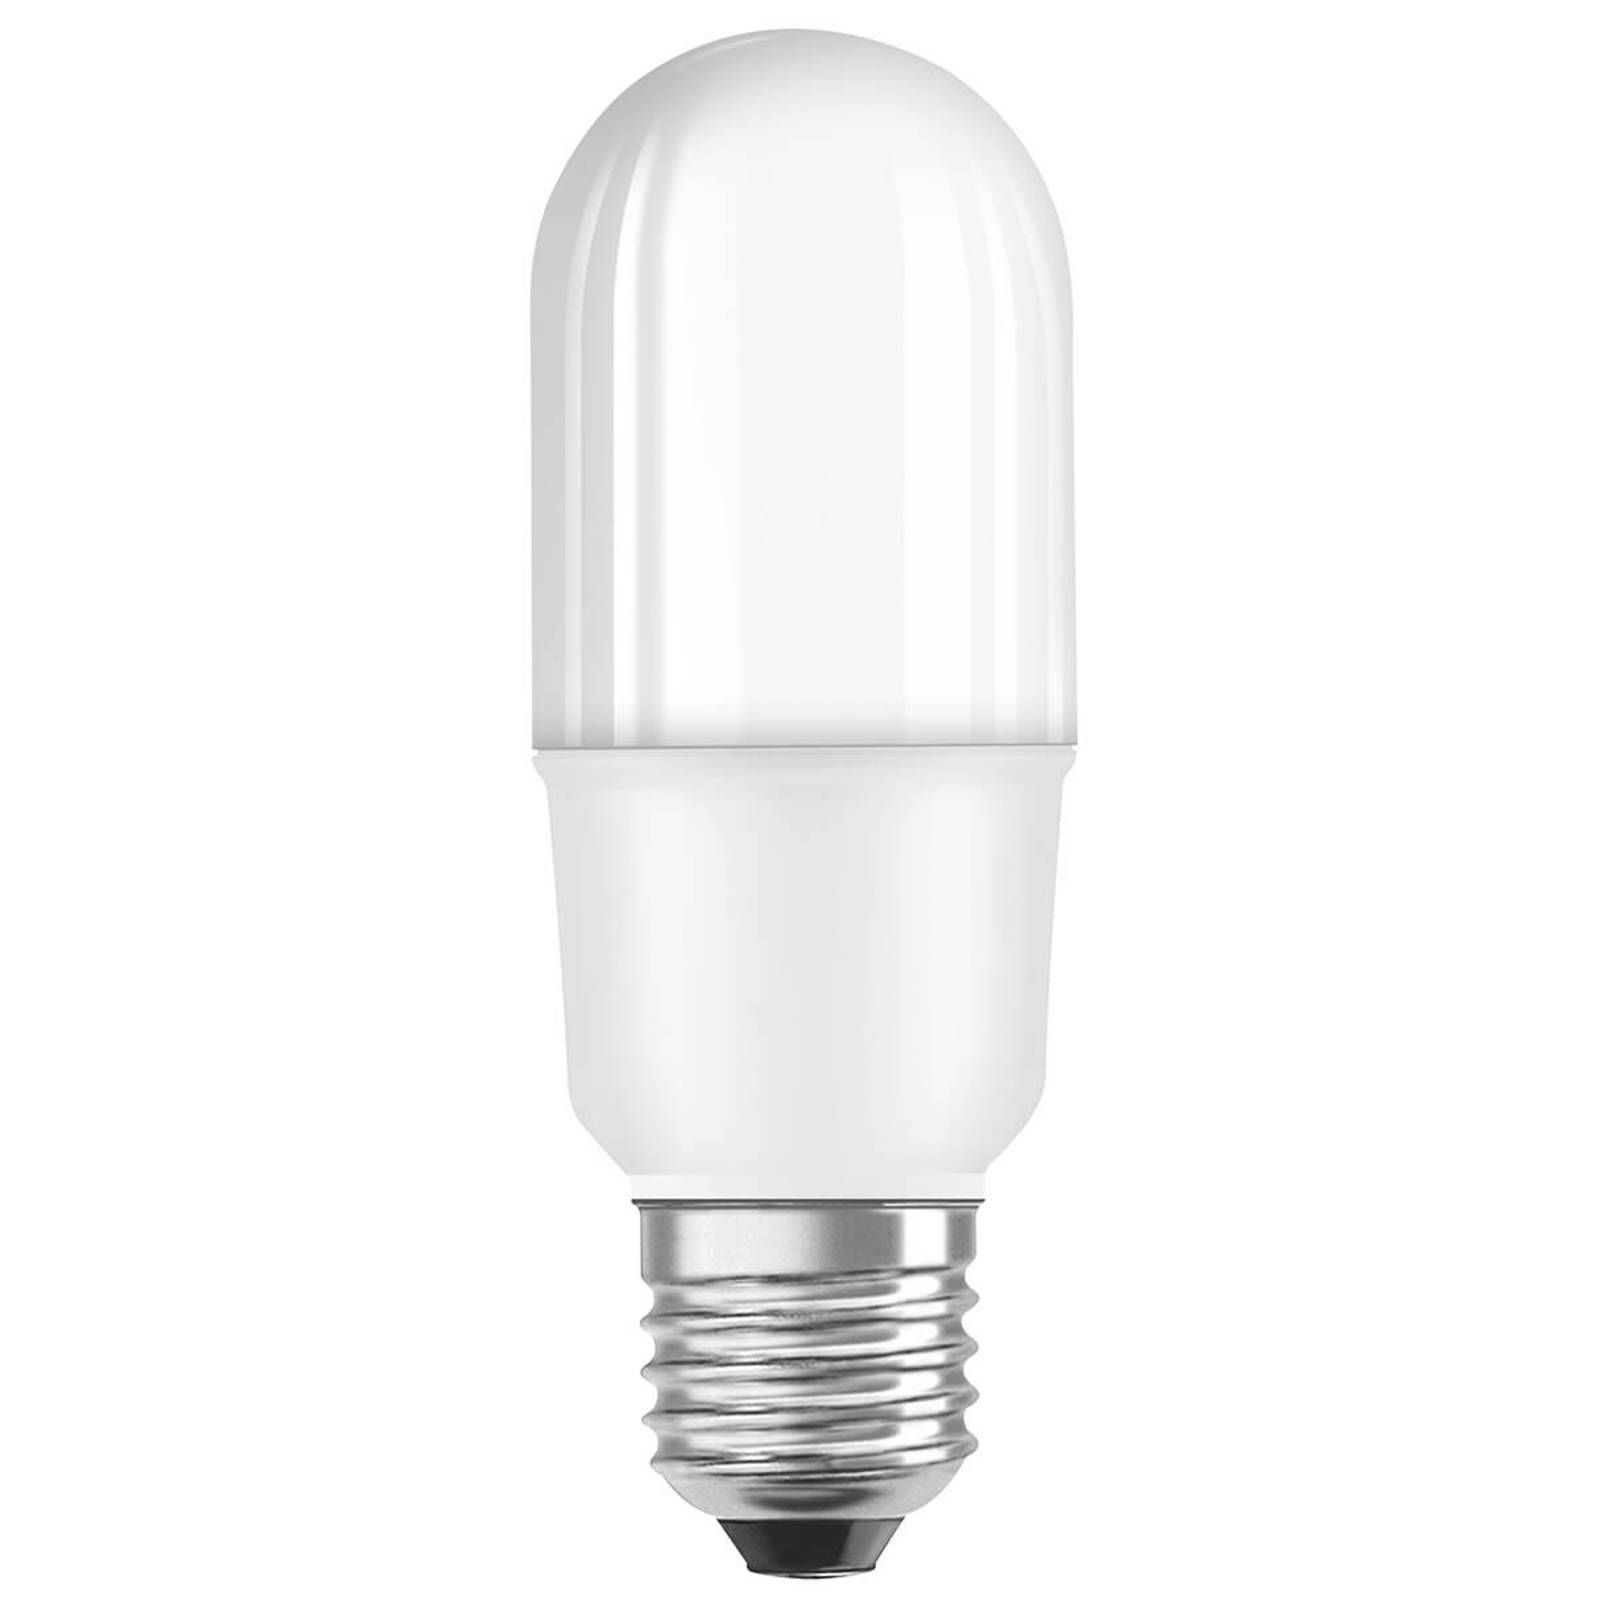 OSRAM LED trubica Star E27 9W teplá biela, E27, 9W, Energialuokka: E, P: 11.4 cm